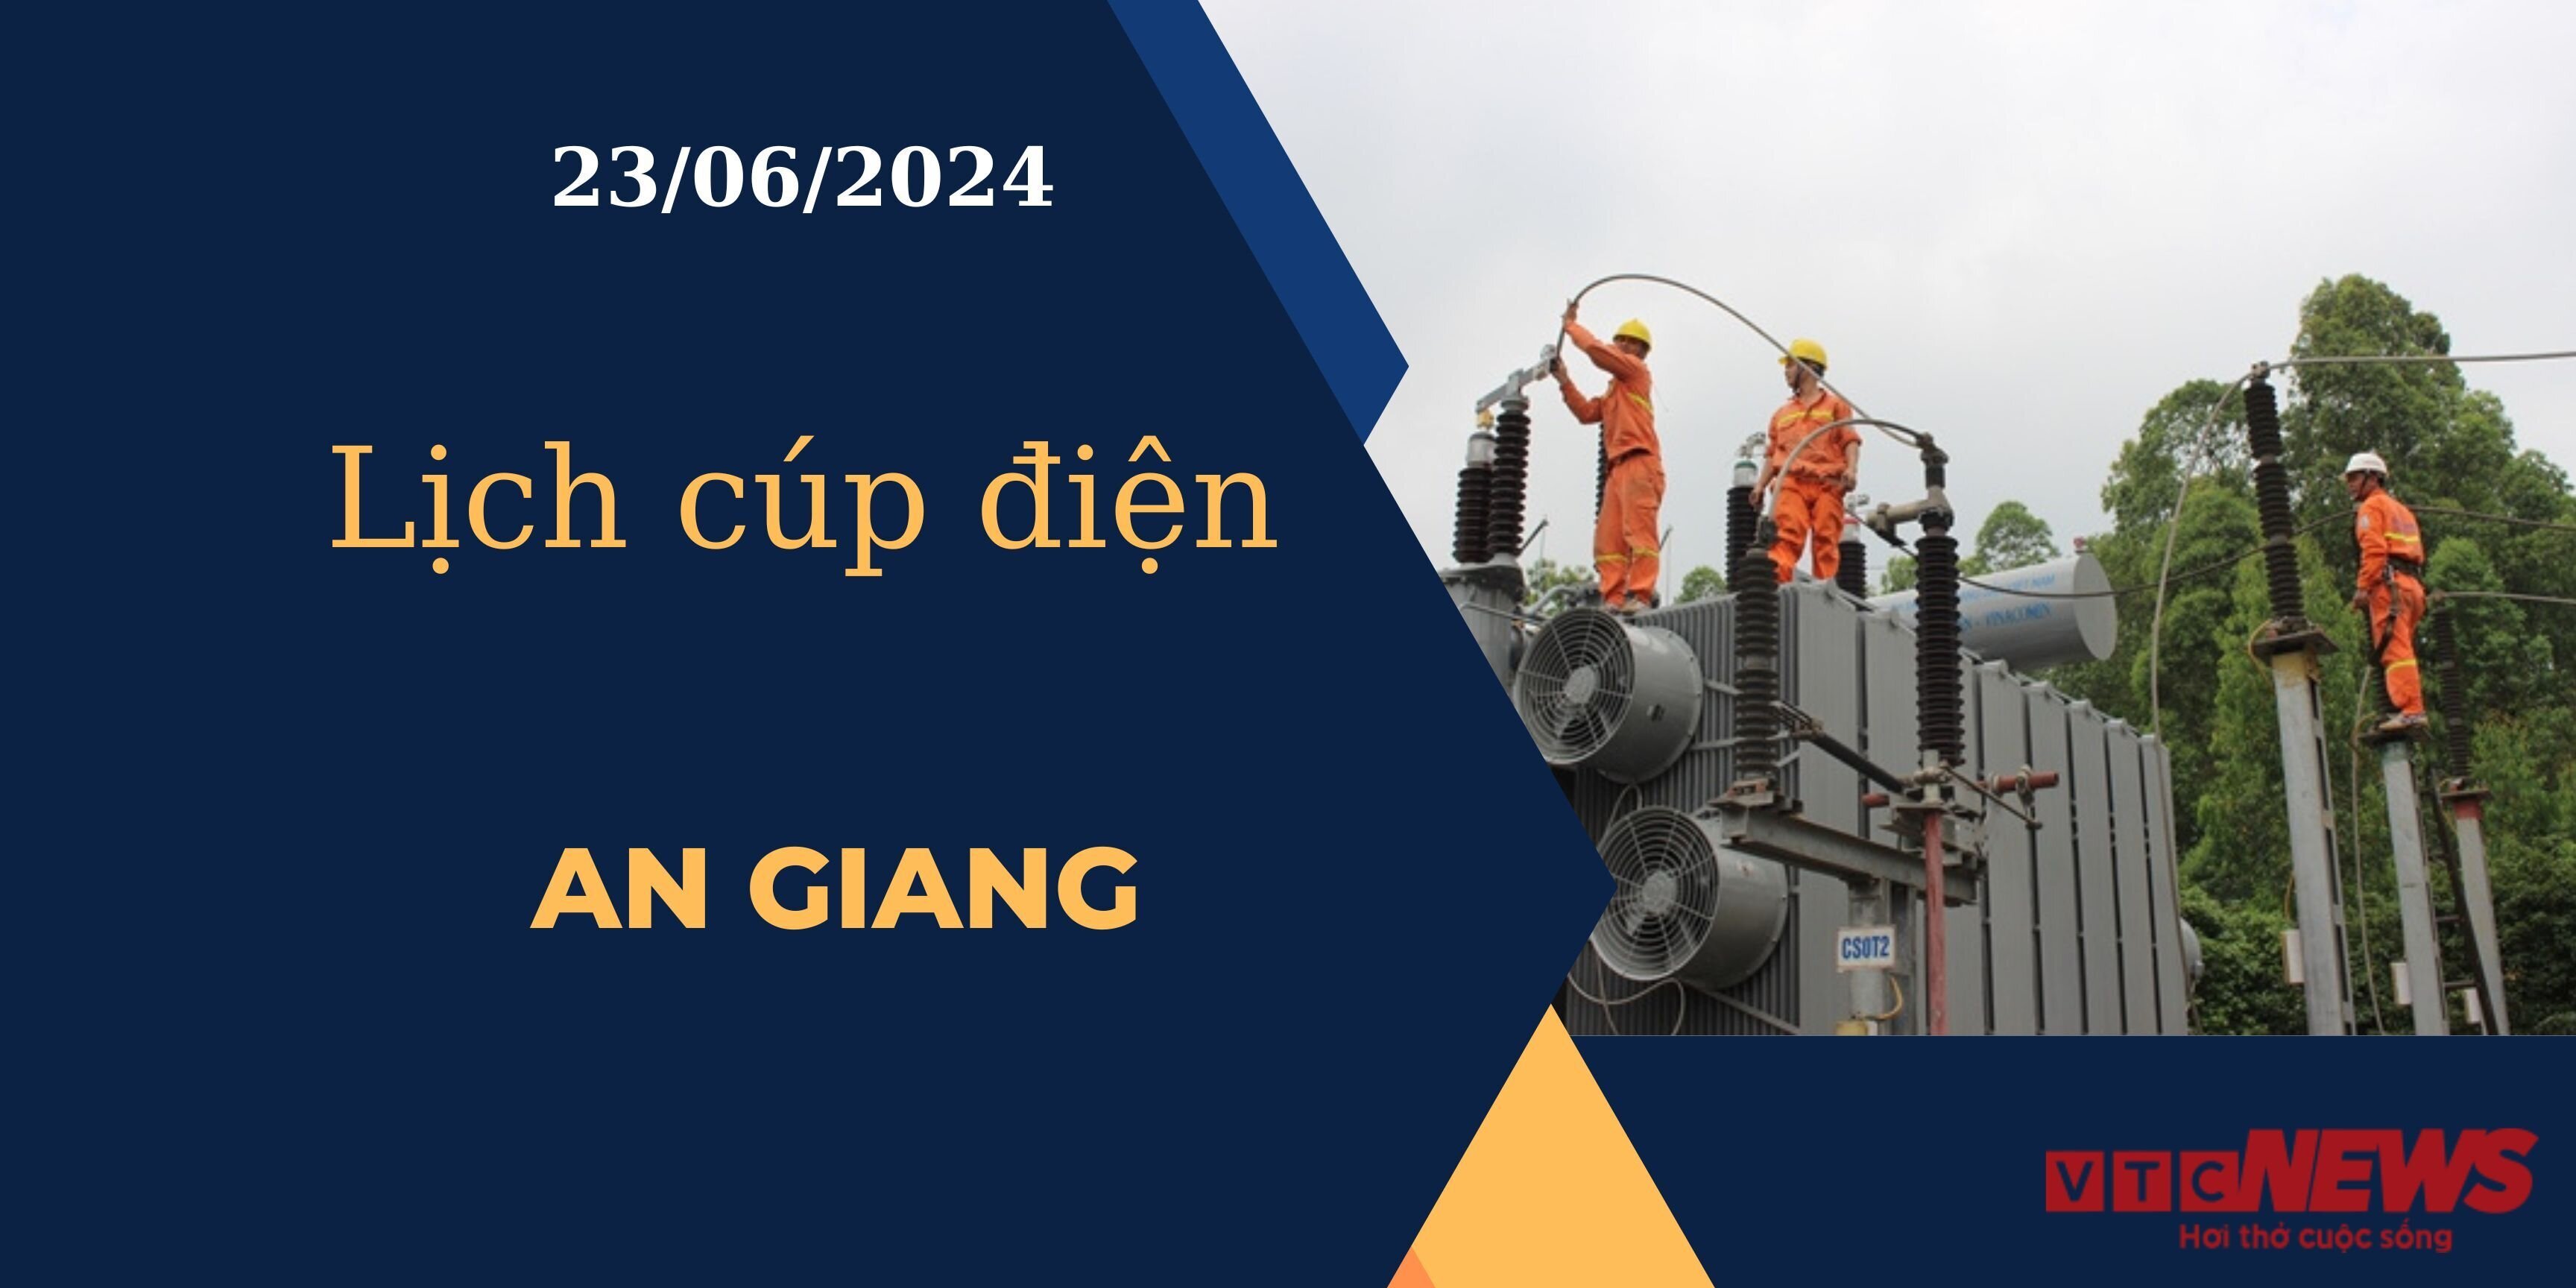 Lịch cúp điện hôm nay ngày 23/06/2024 tại An Giang